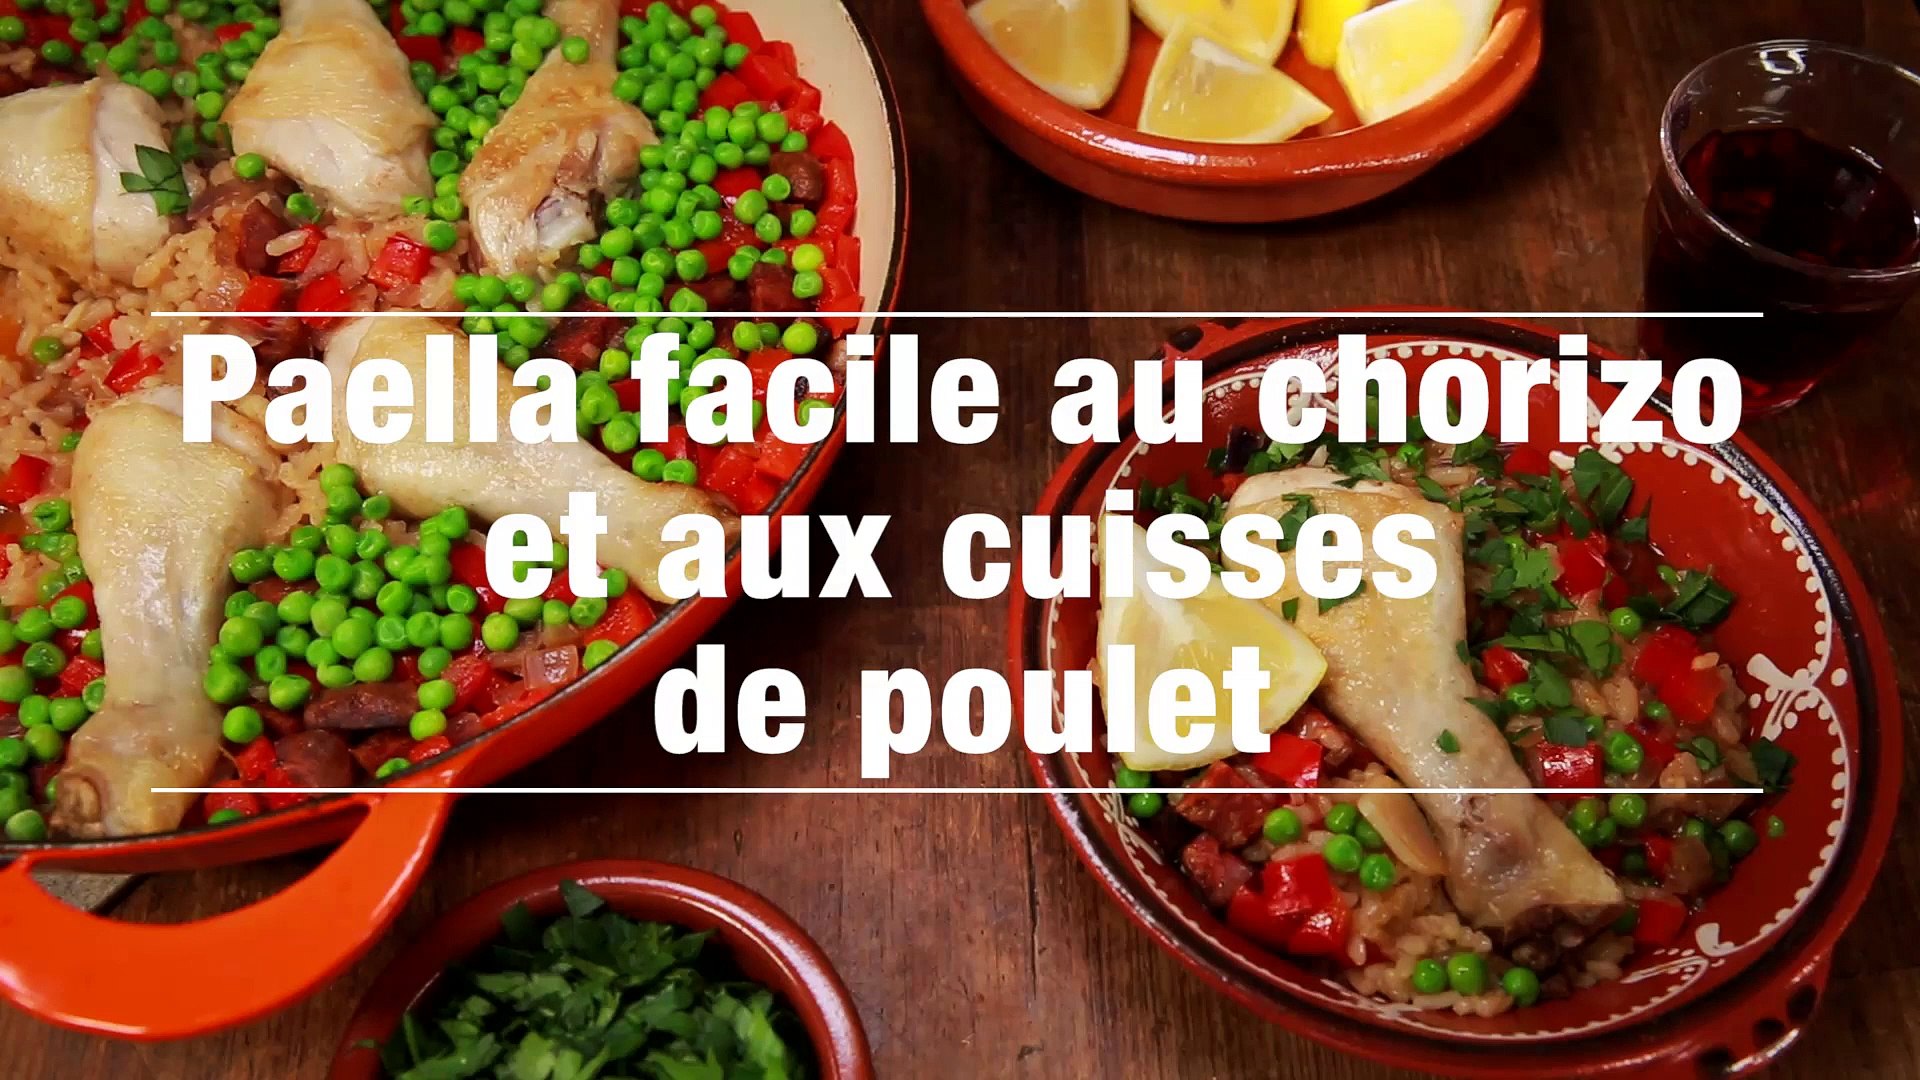 Paella Facile Au Chorizo Et Aux Cuisses De Poulet Video Dailymotion